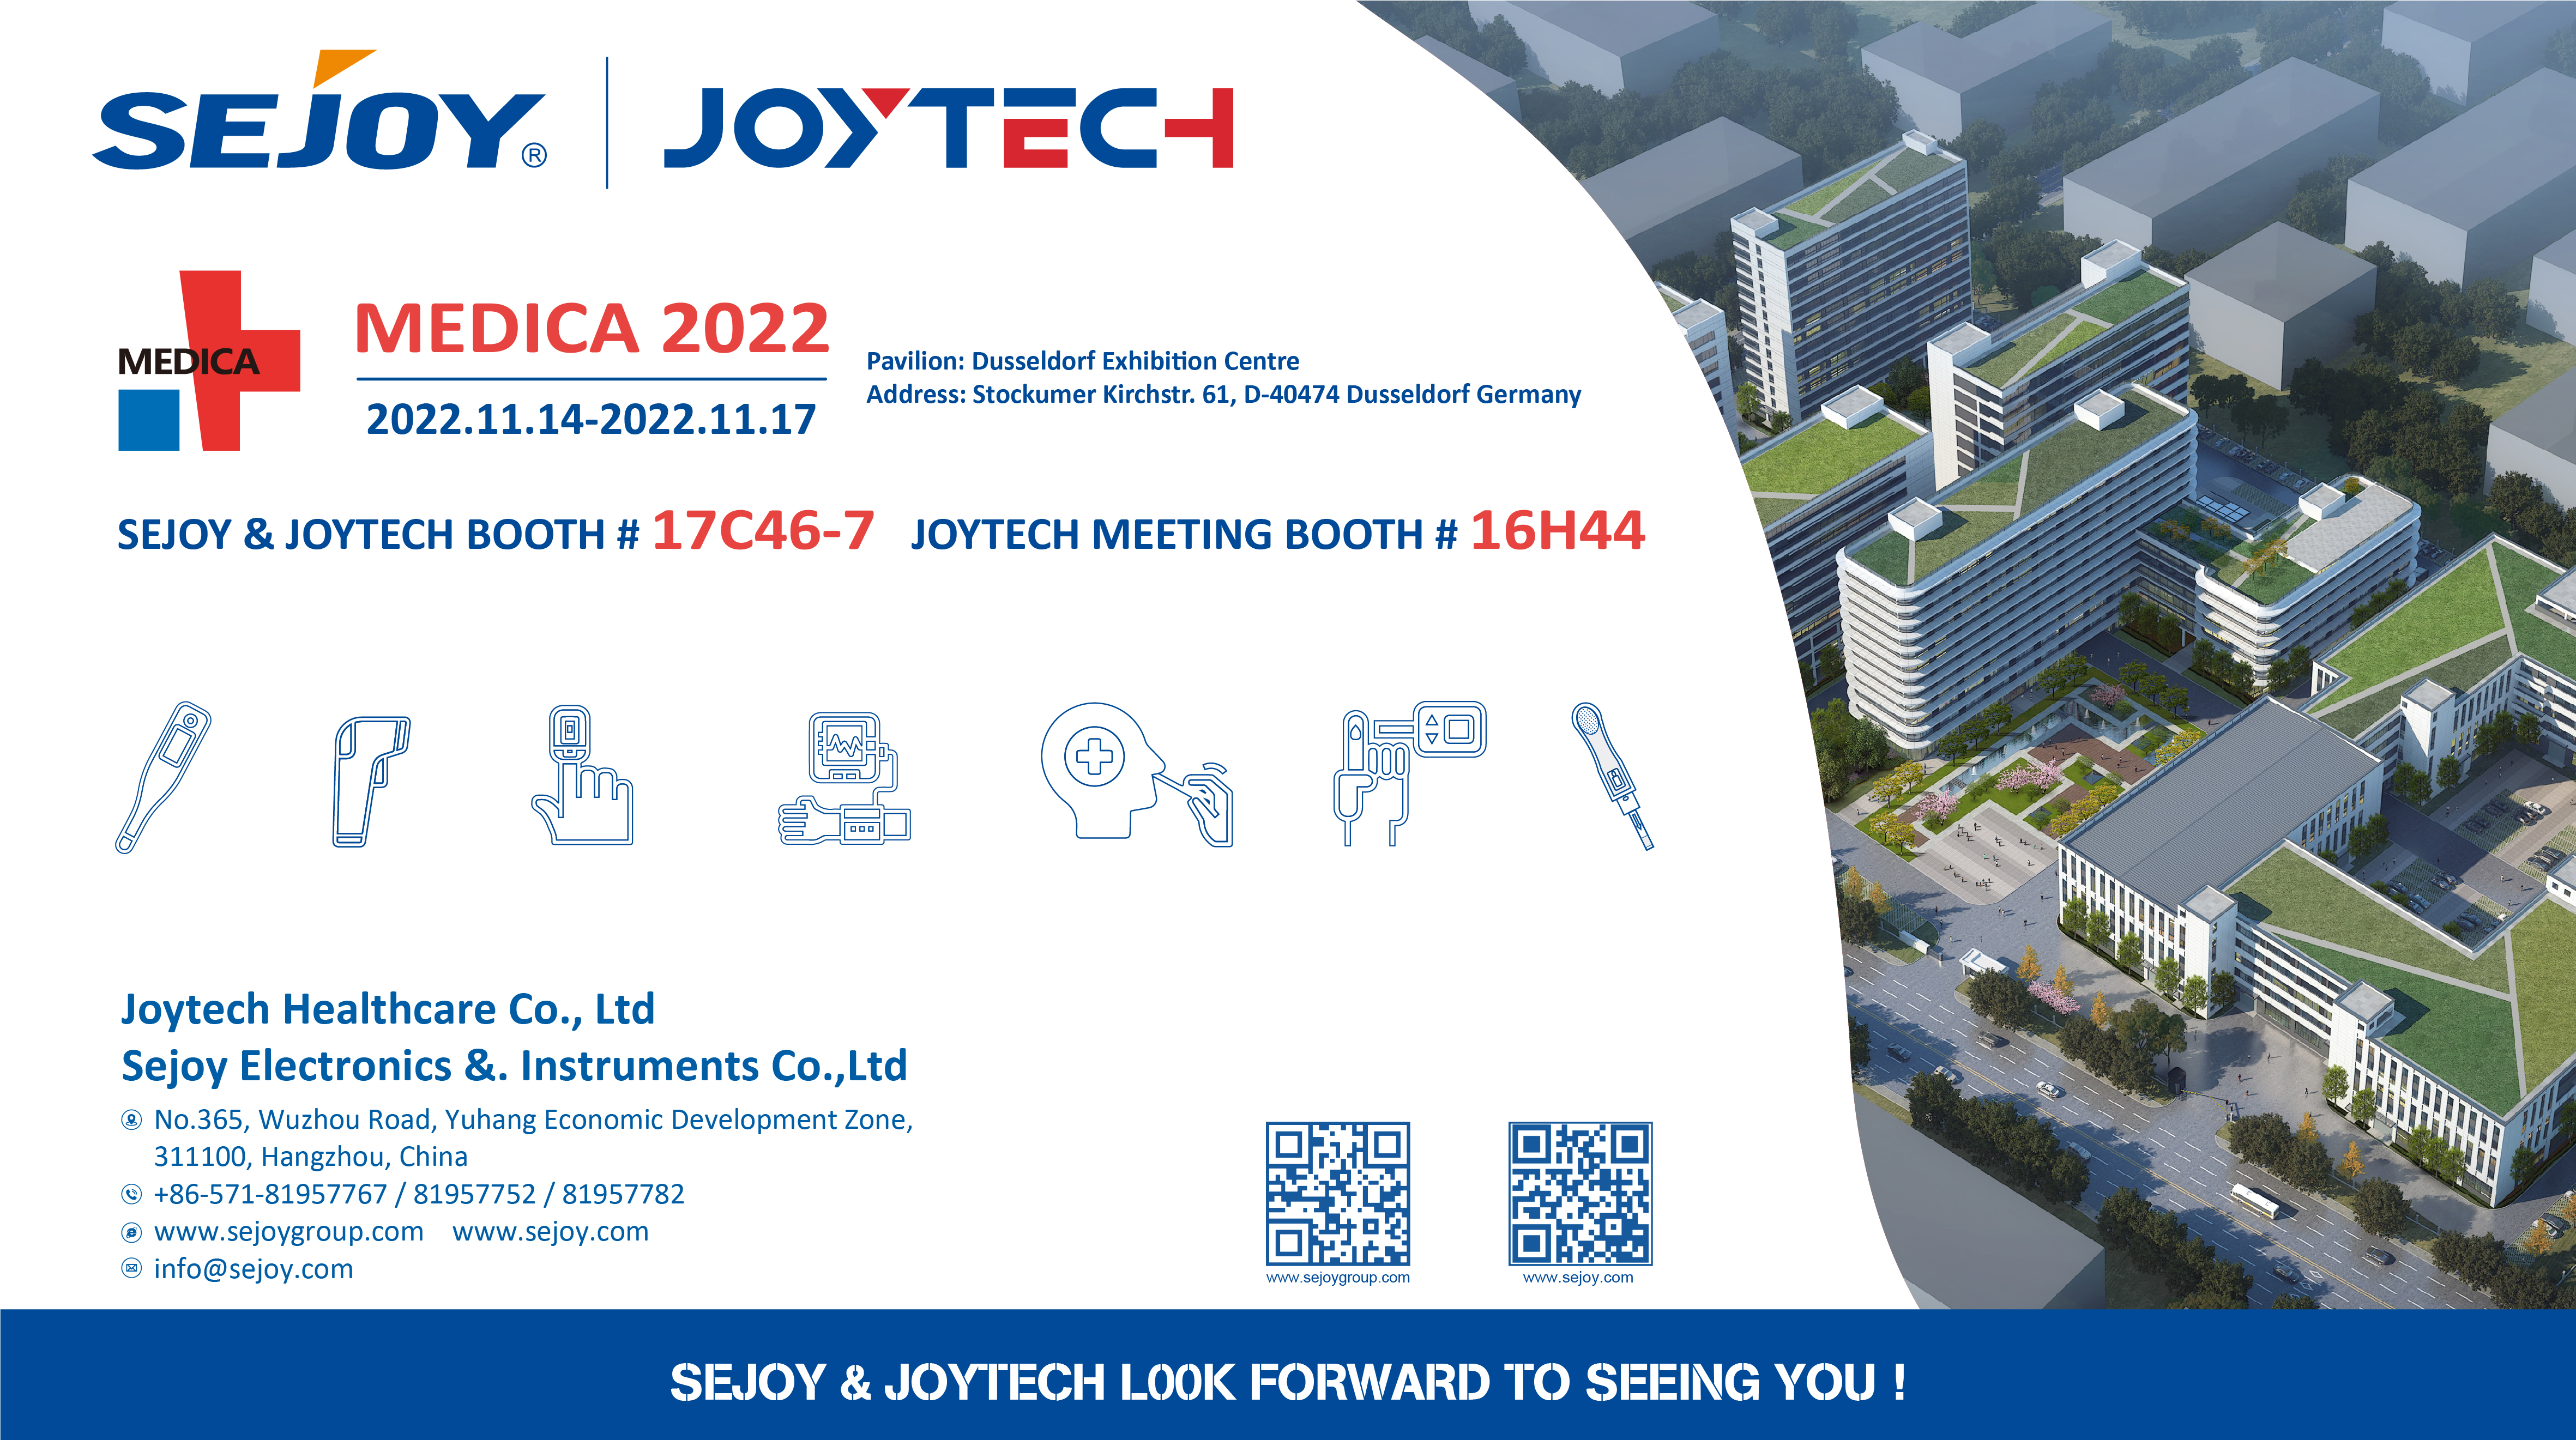 Antevisão da exposição Joytech para o segundo semestre de 2022